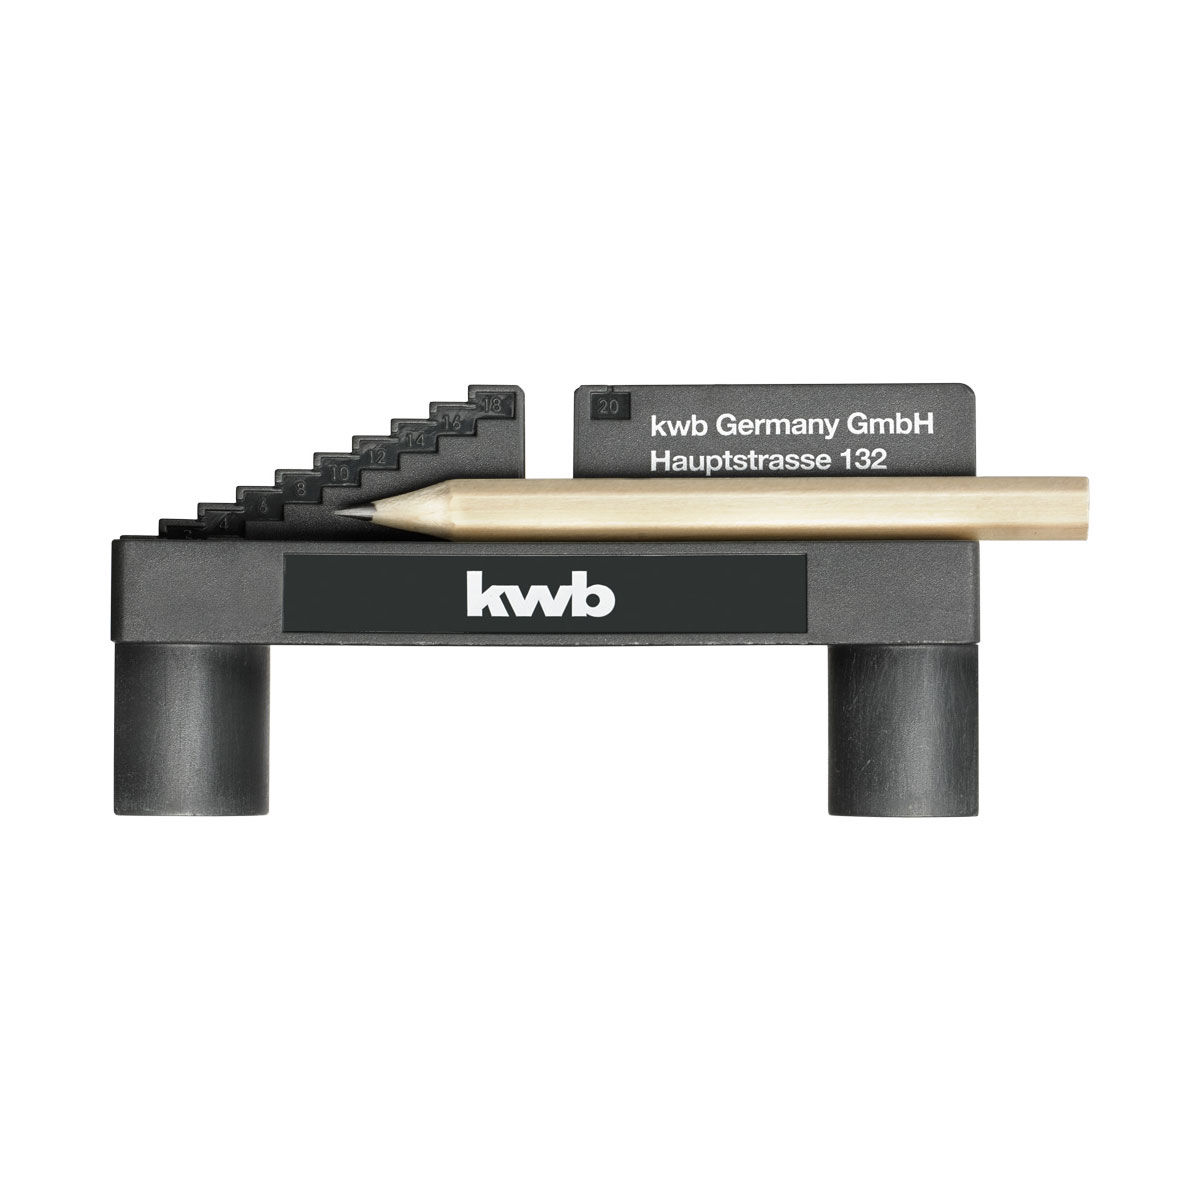 kwb Mittenfinder mit Bleistift und metrischer Skala als Anzeichenhilfe von 1...20  mm. | 276616